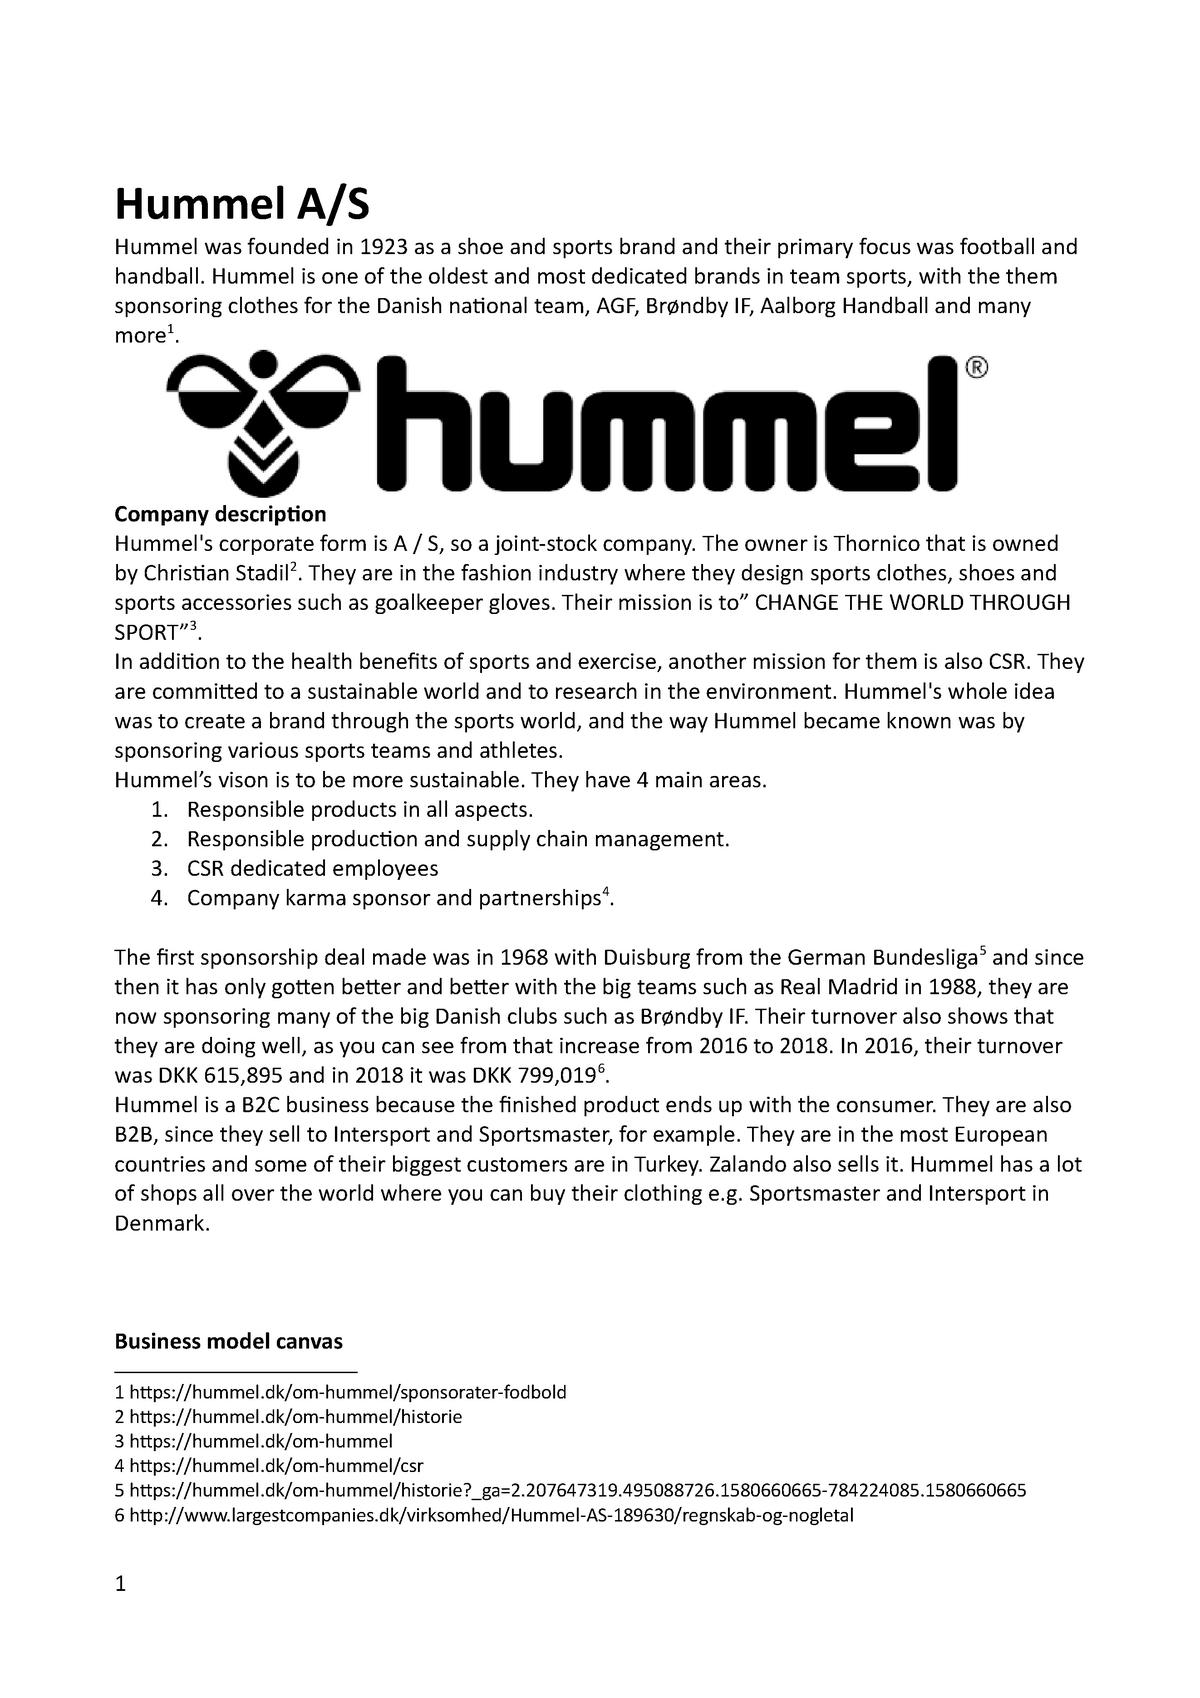 Hummel marketing - afsætning - HVL StuDocu